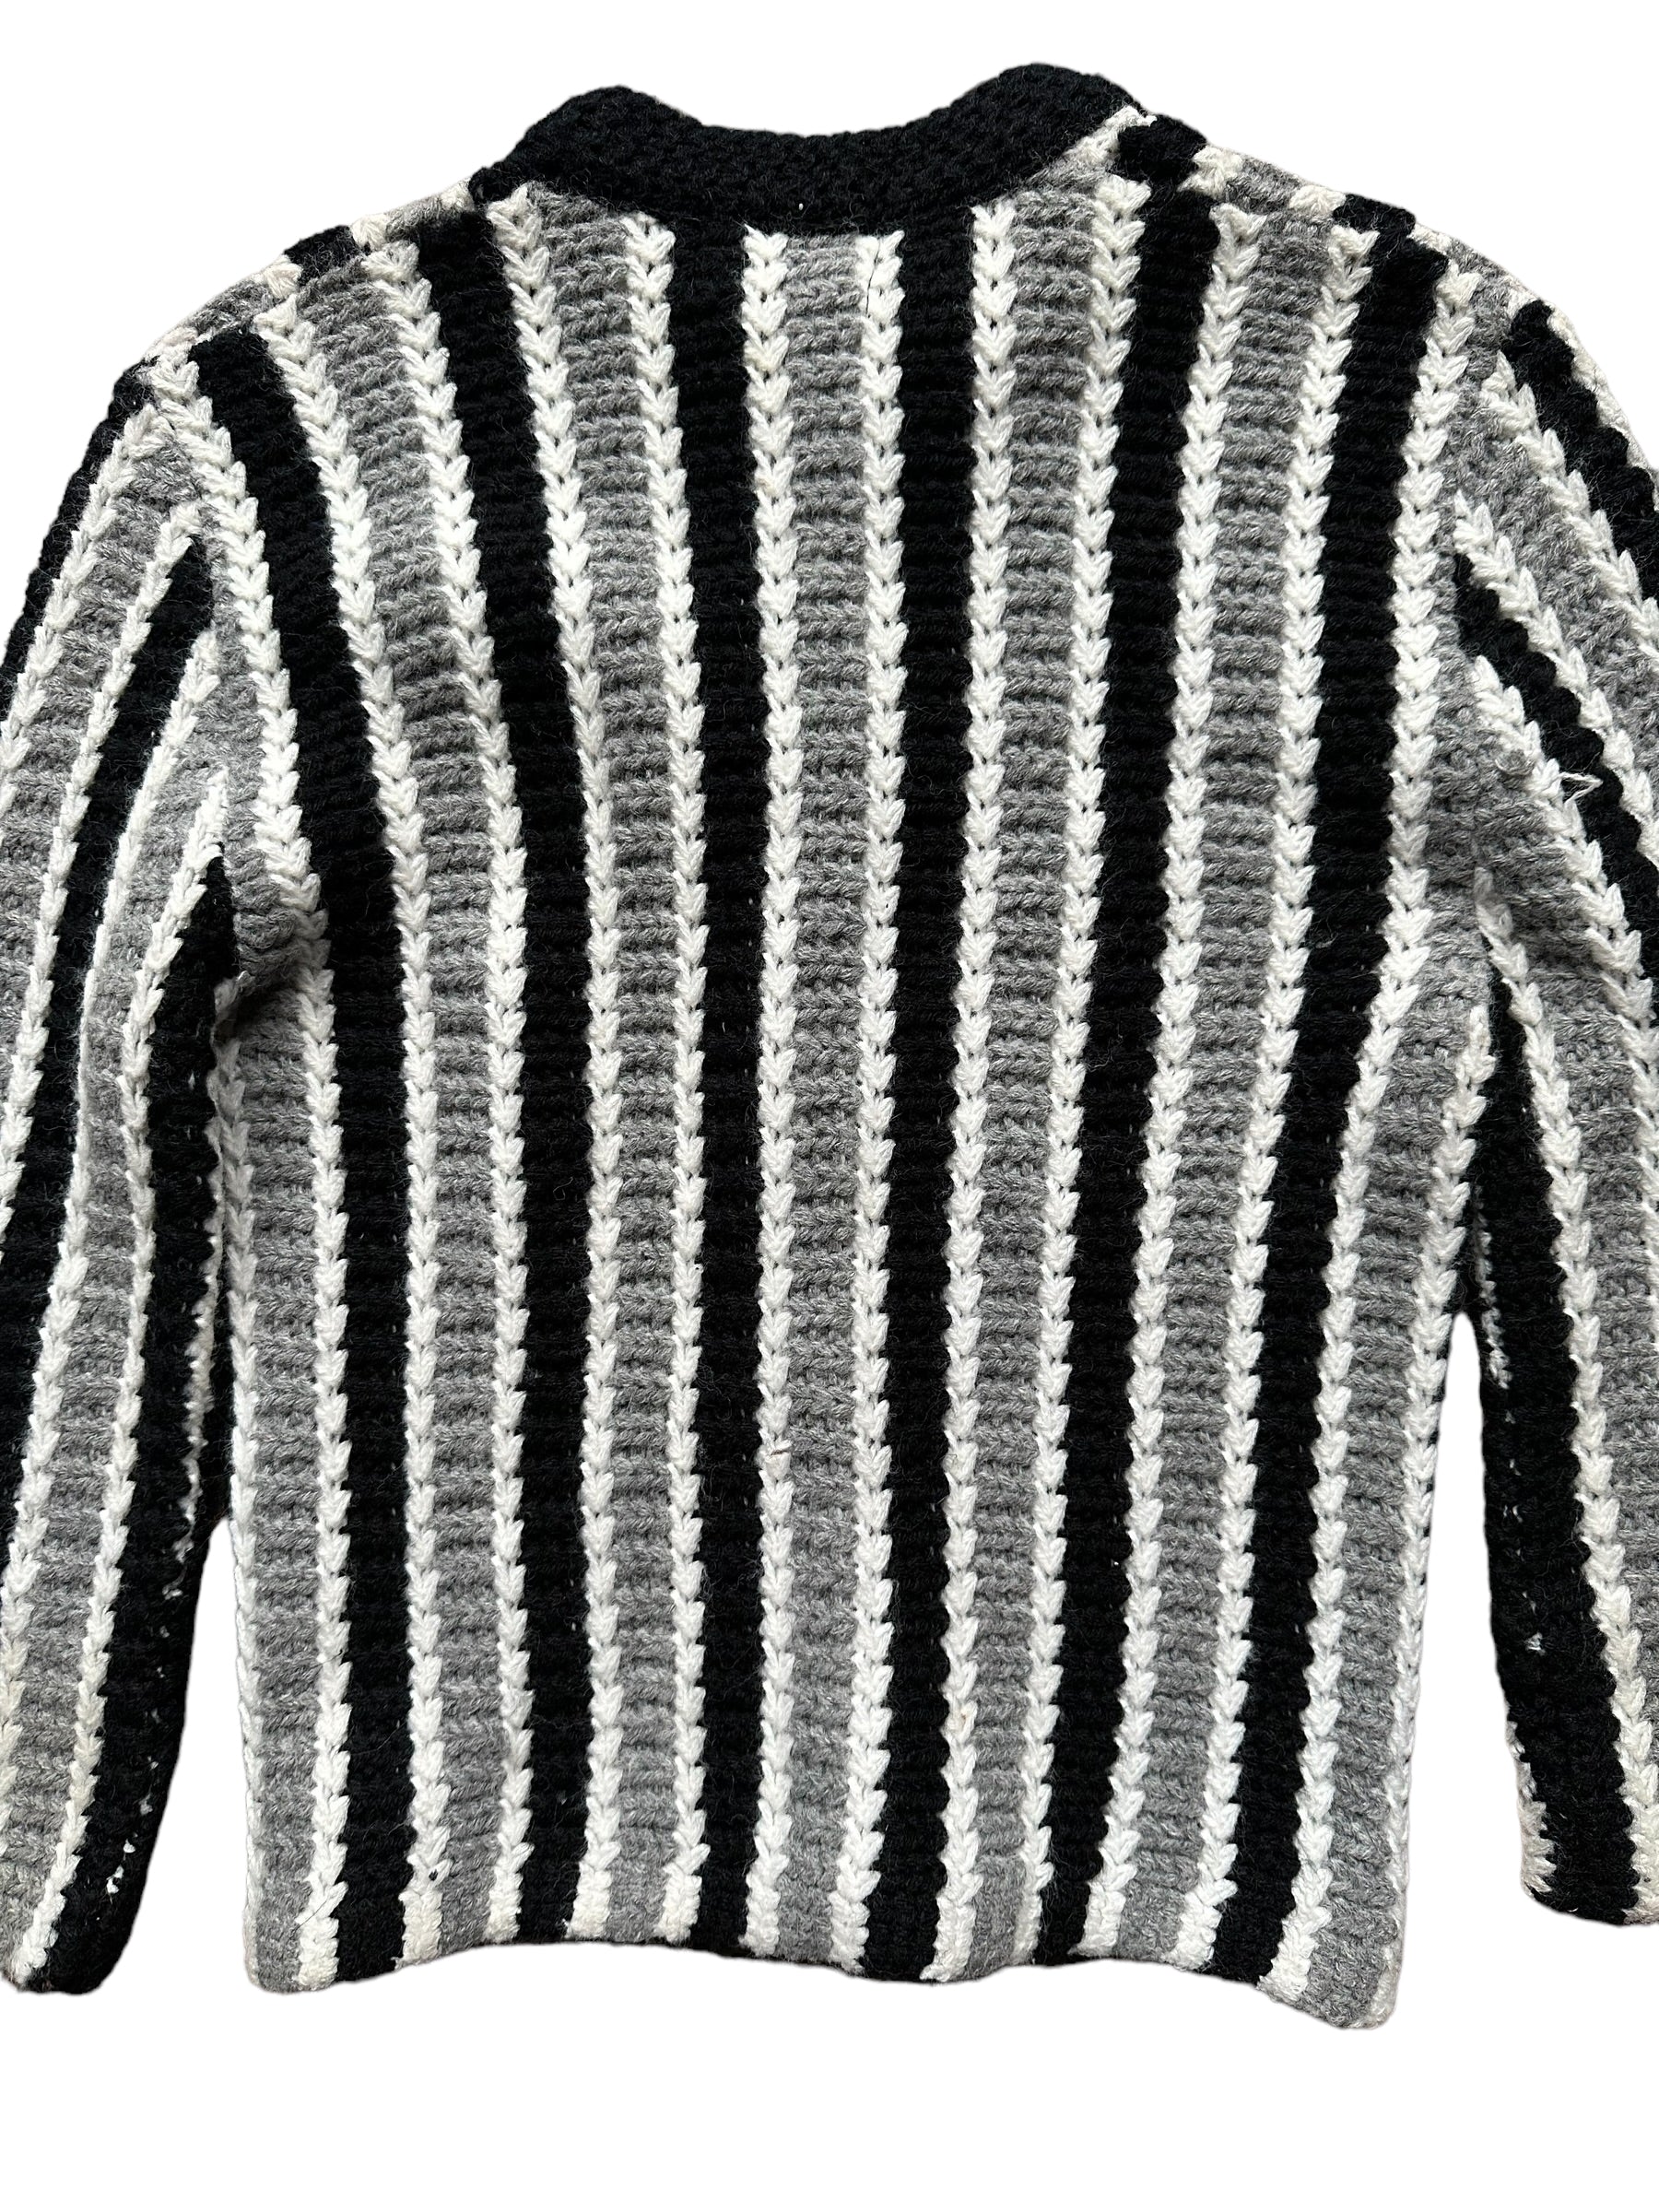 Rear Detail on Vintage Super Orlon By Jane Irwill Sweater SZ M |  Vintage Sweaters Seattle | Barn Owl Vintage Seattle